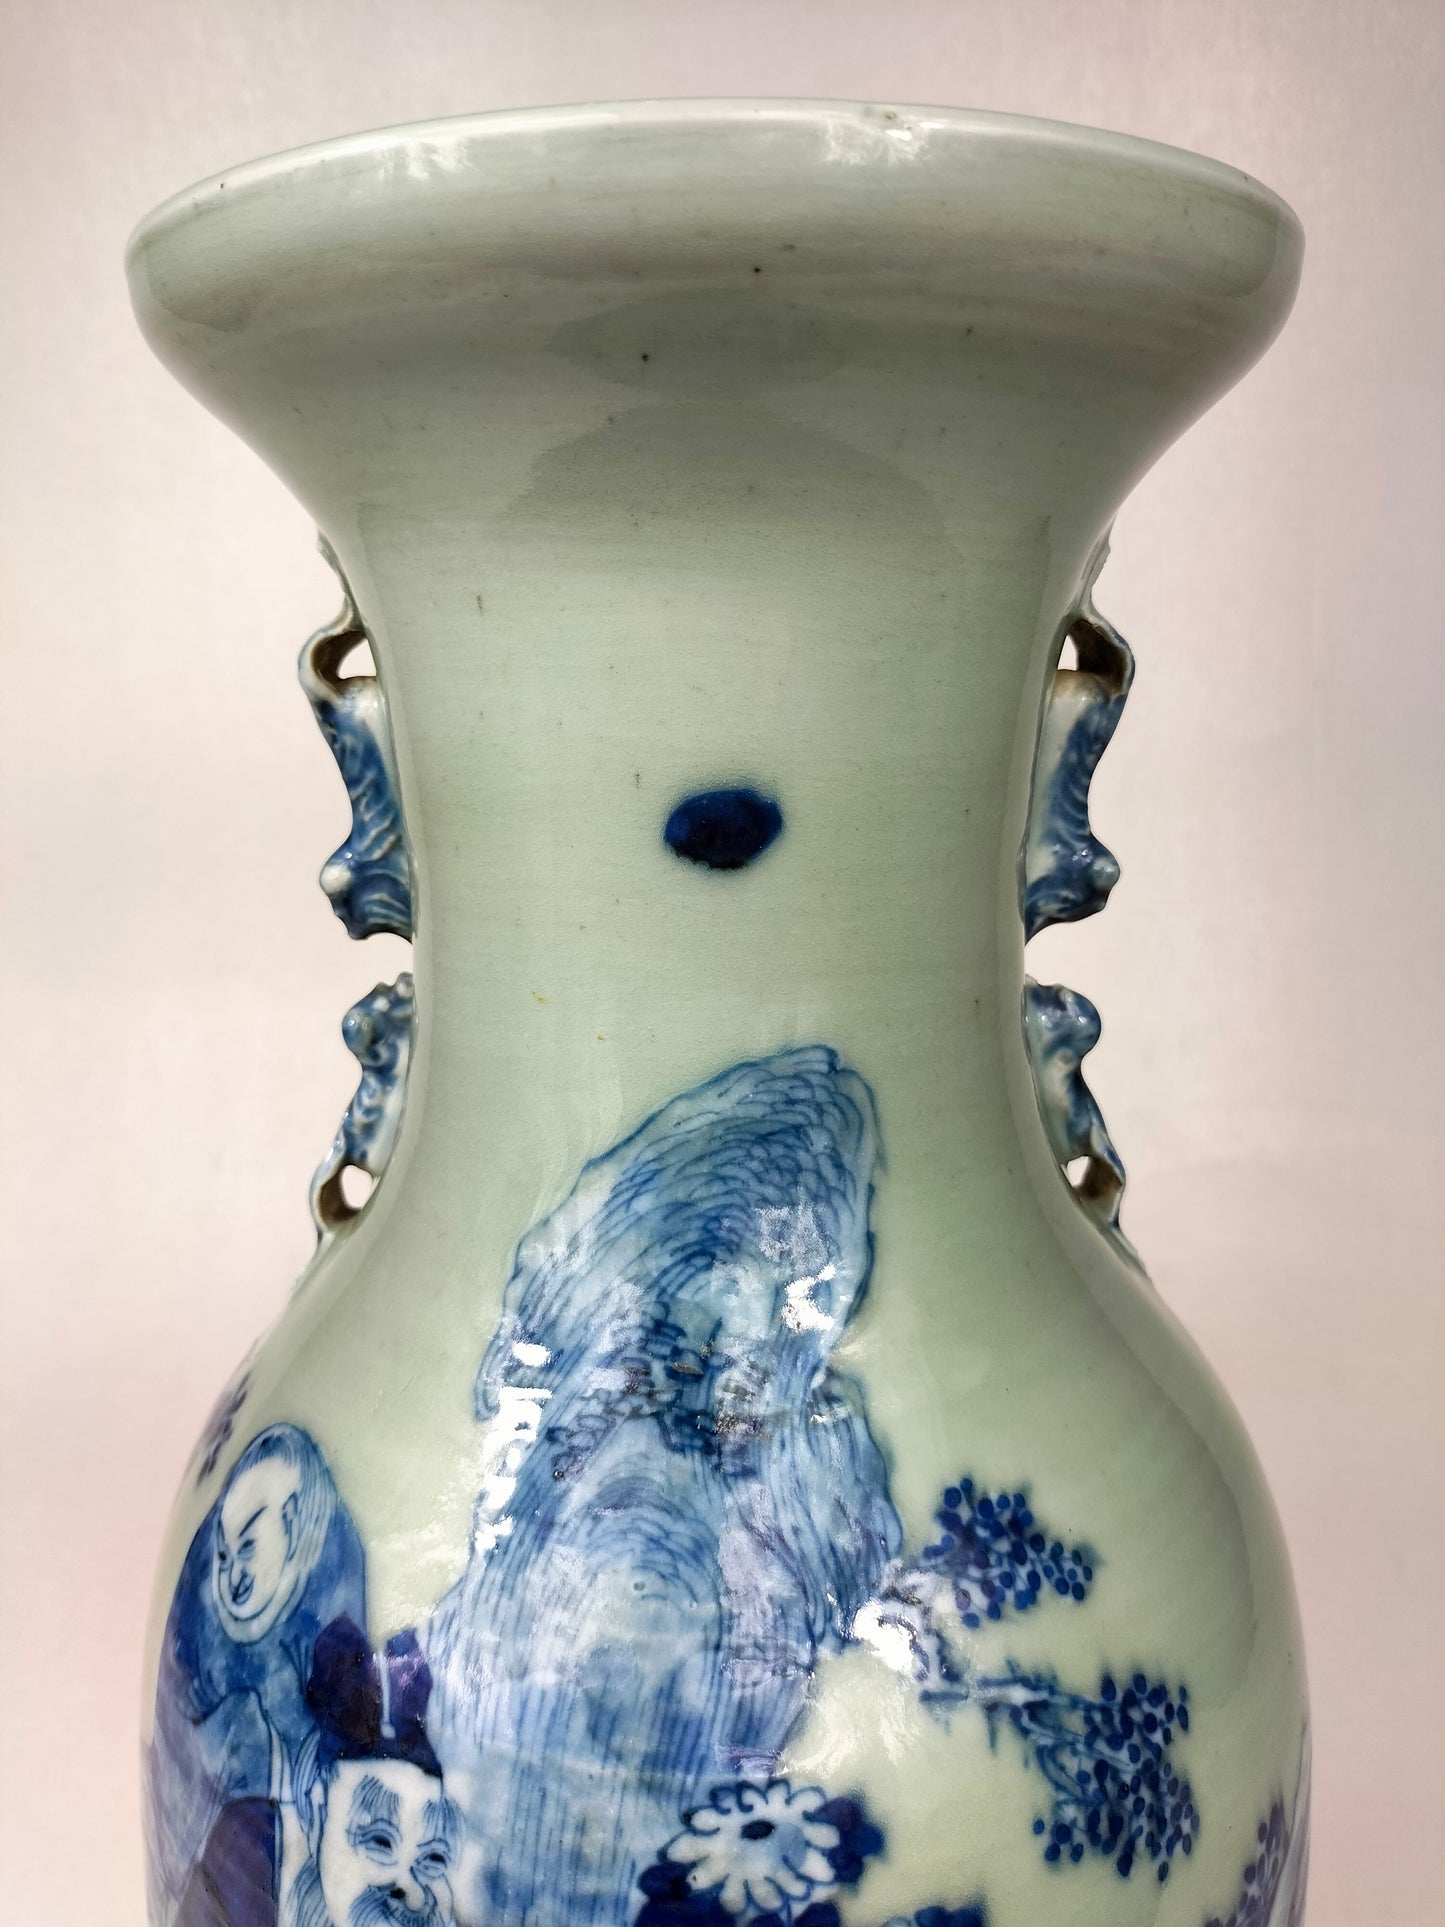 Vase caladon chinois antique à décor de sages // Dynastie Qing - 19ème siècle